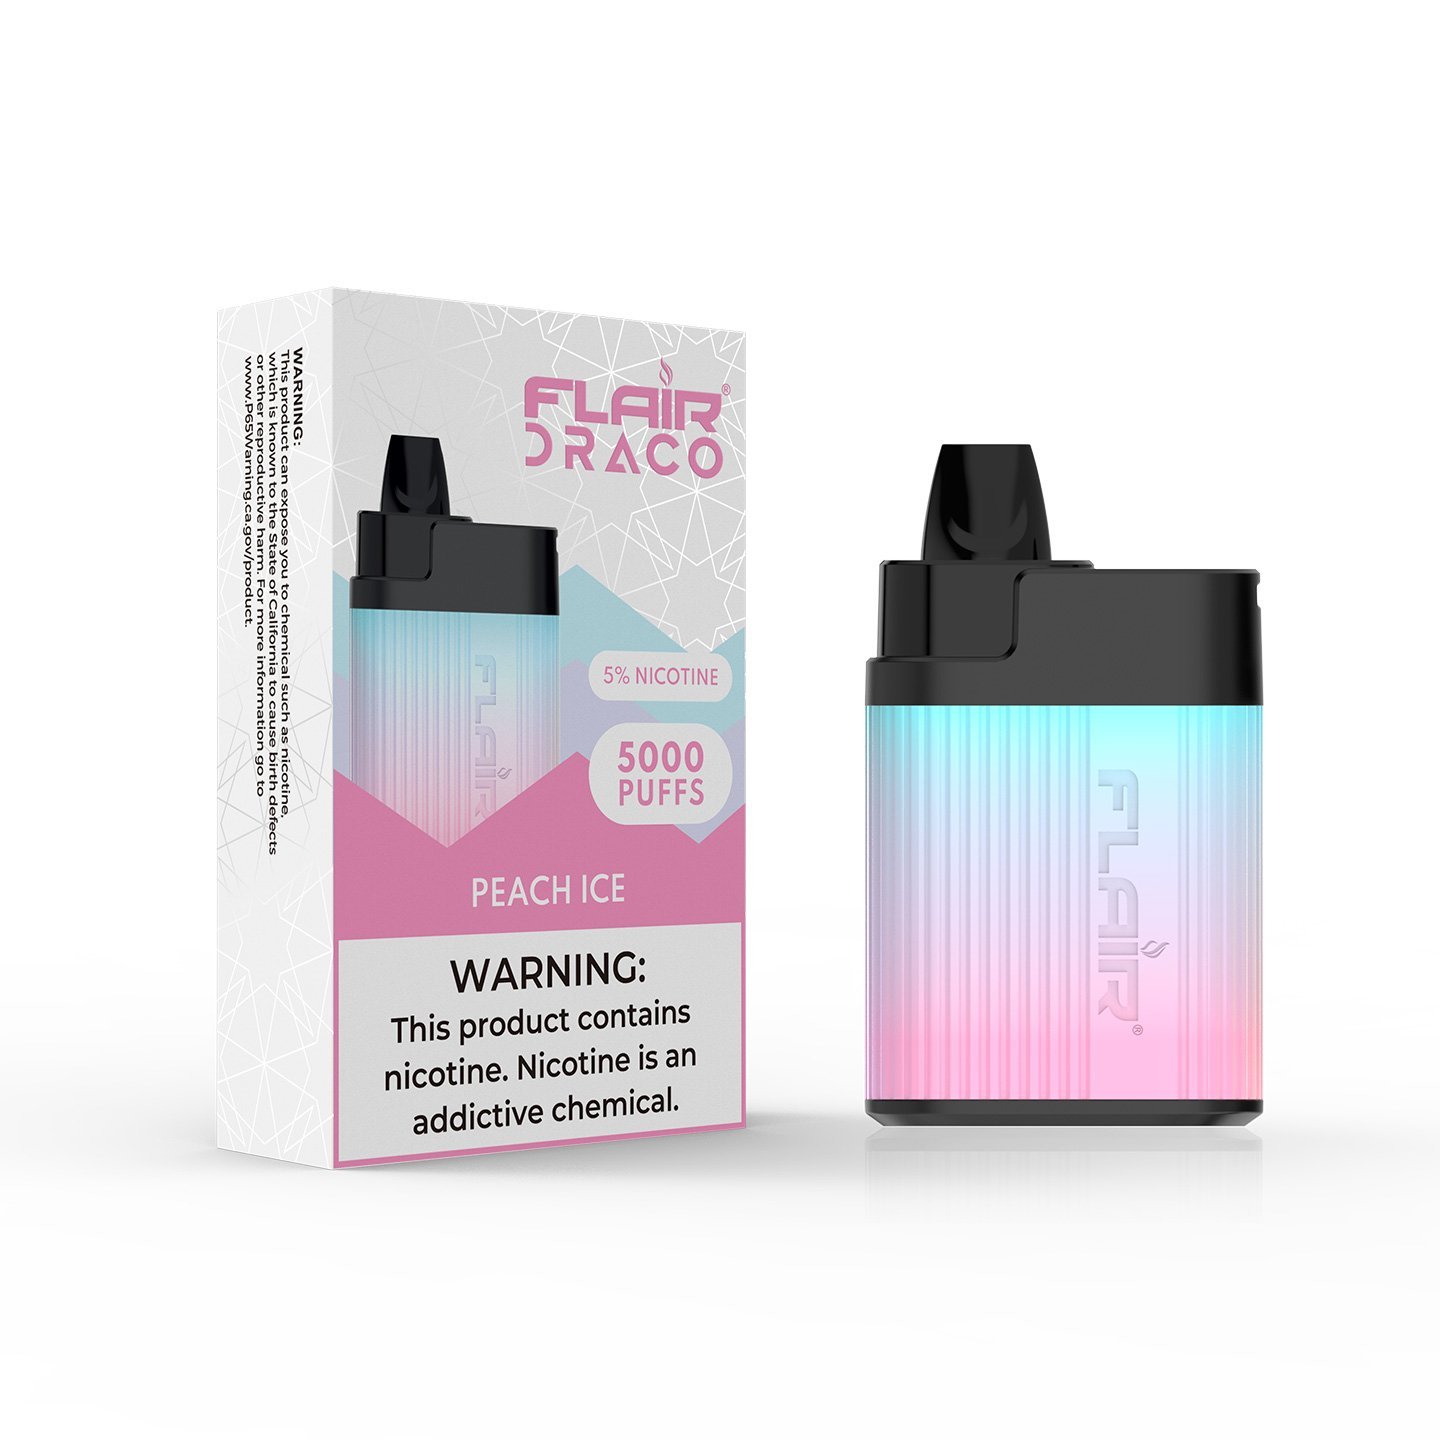 Flair Draco Disposable Device (Peach Ice - 5000 Puffs)